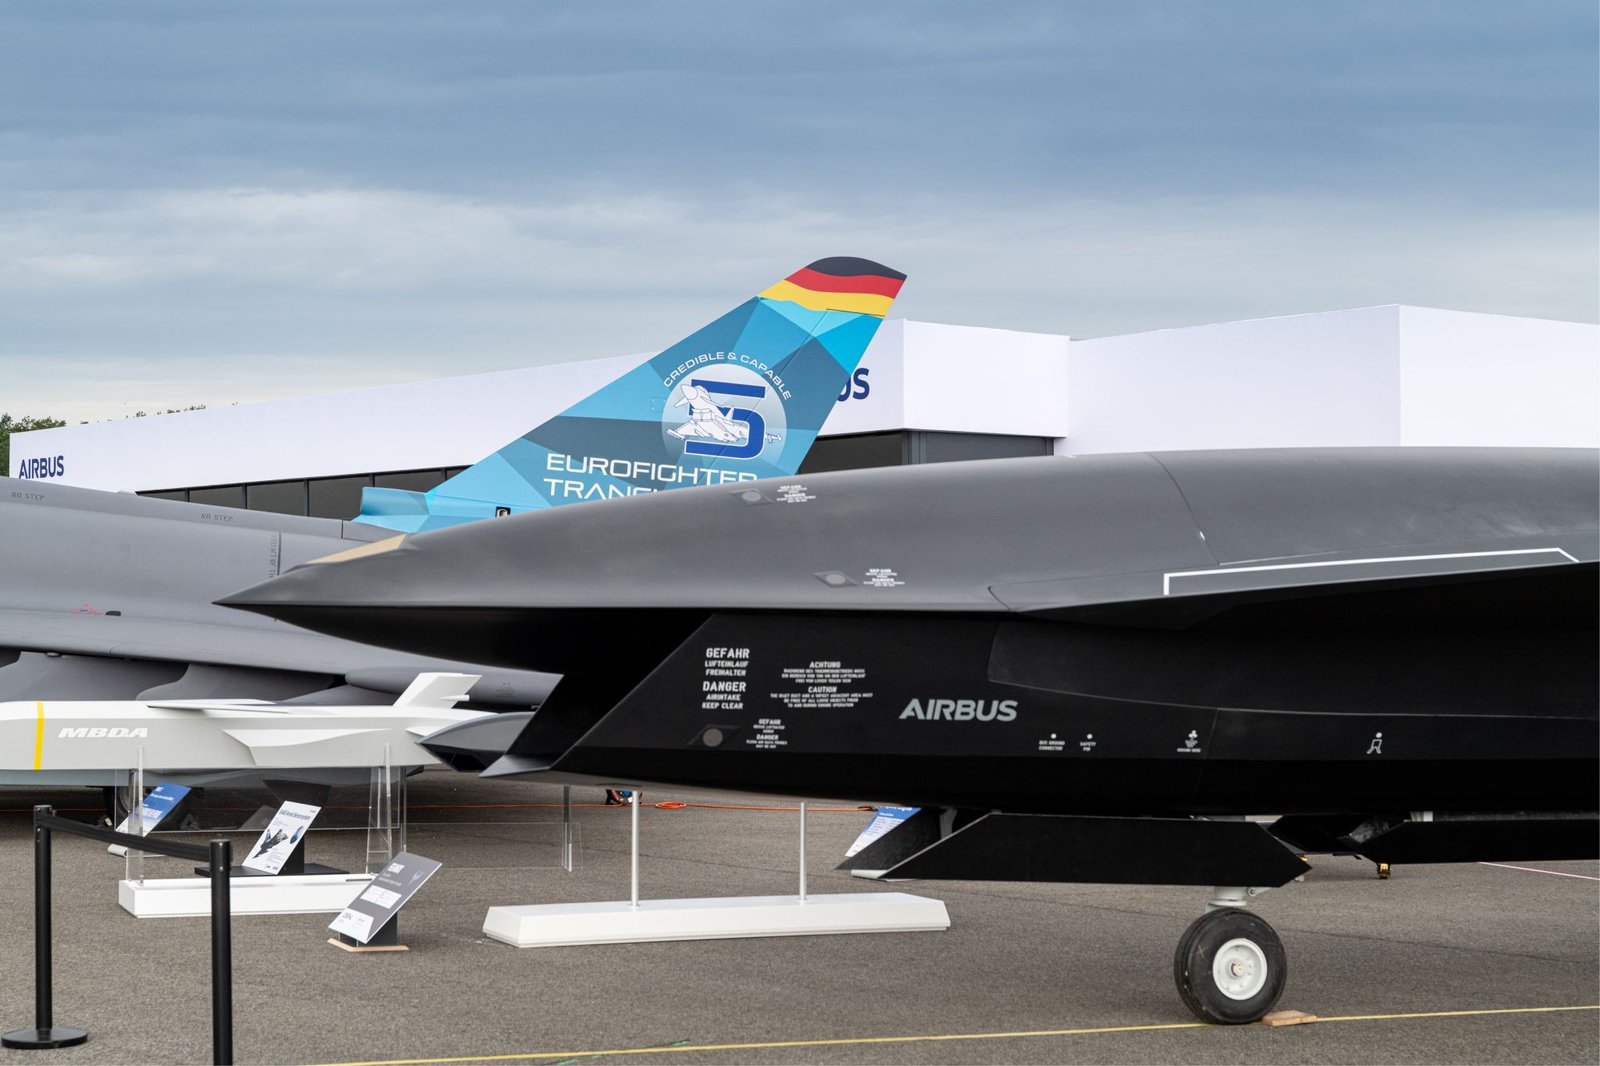 Airbus unveils futuristic drone concept